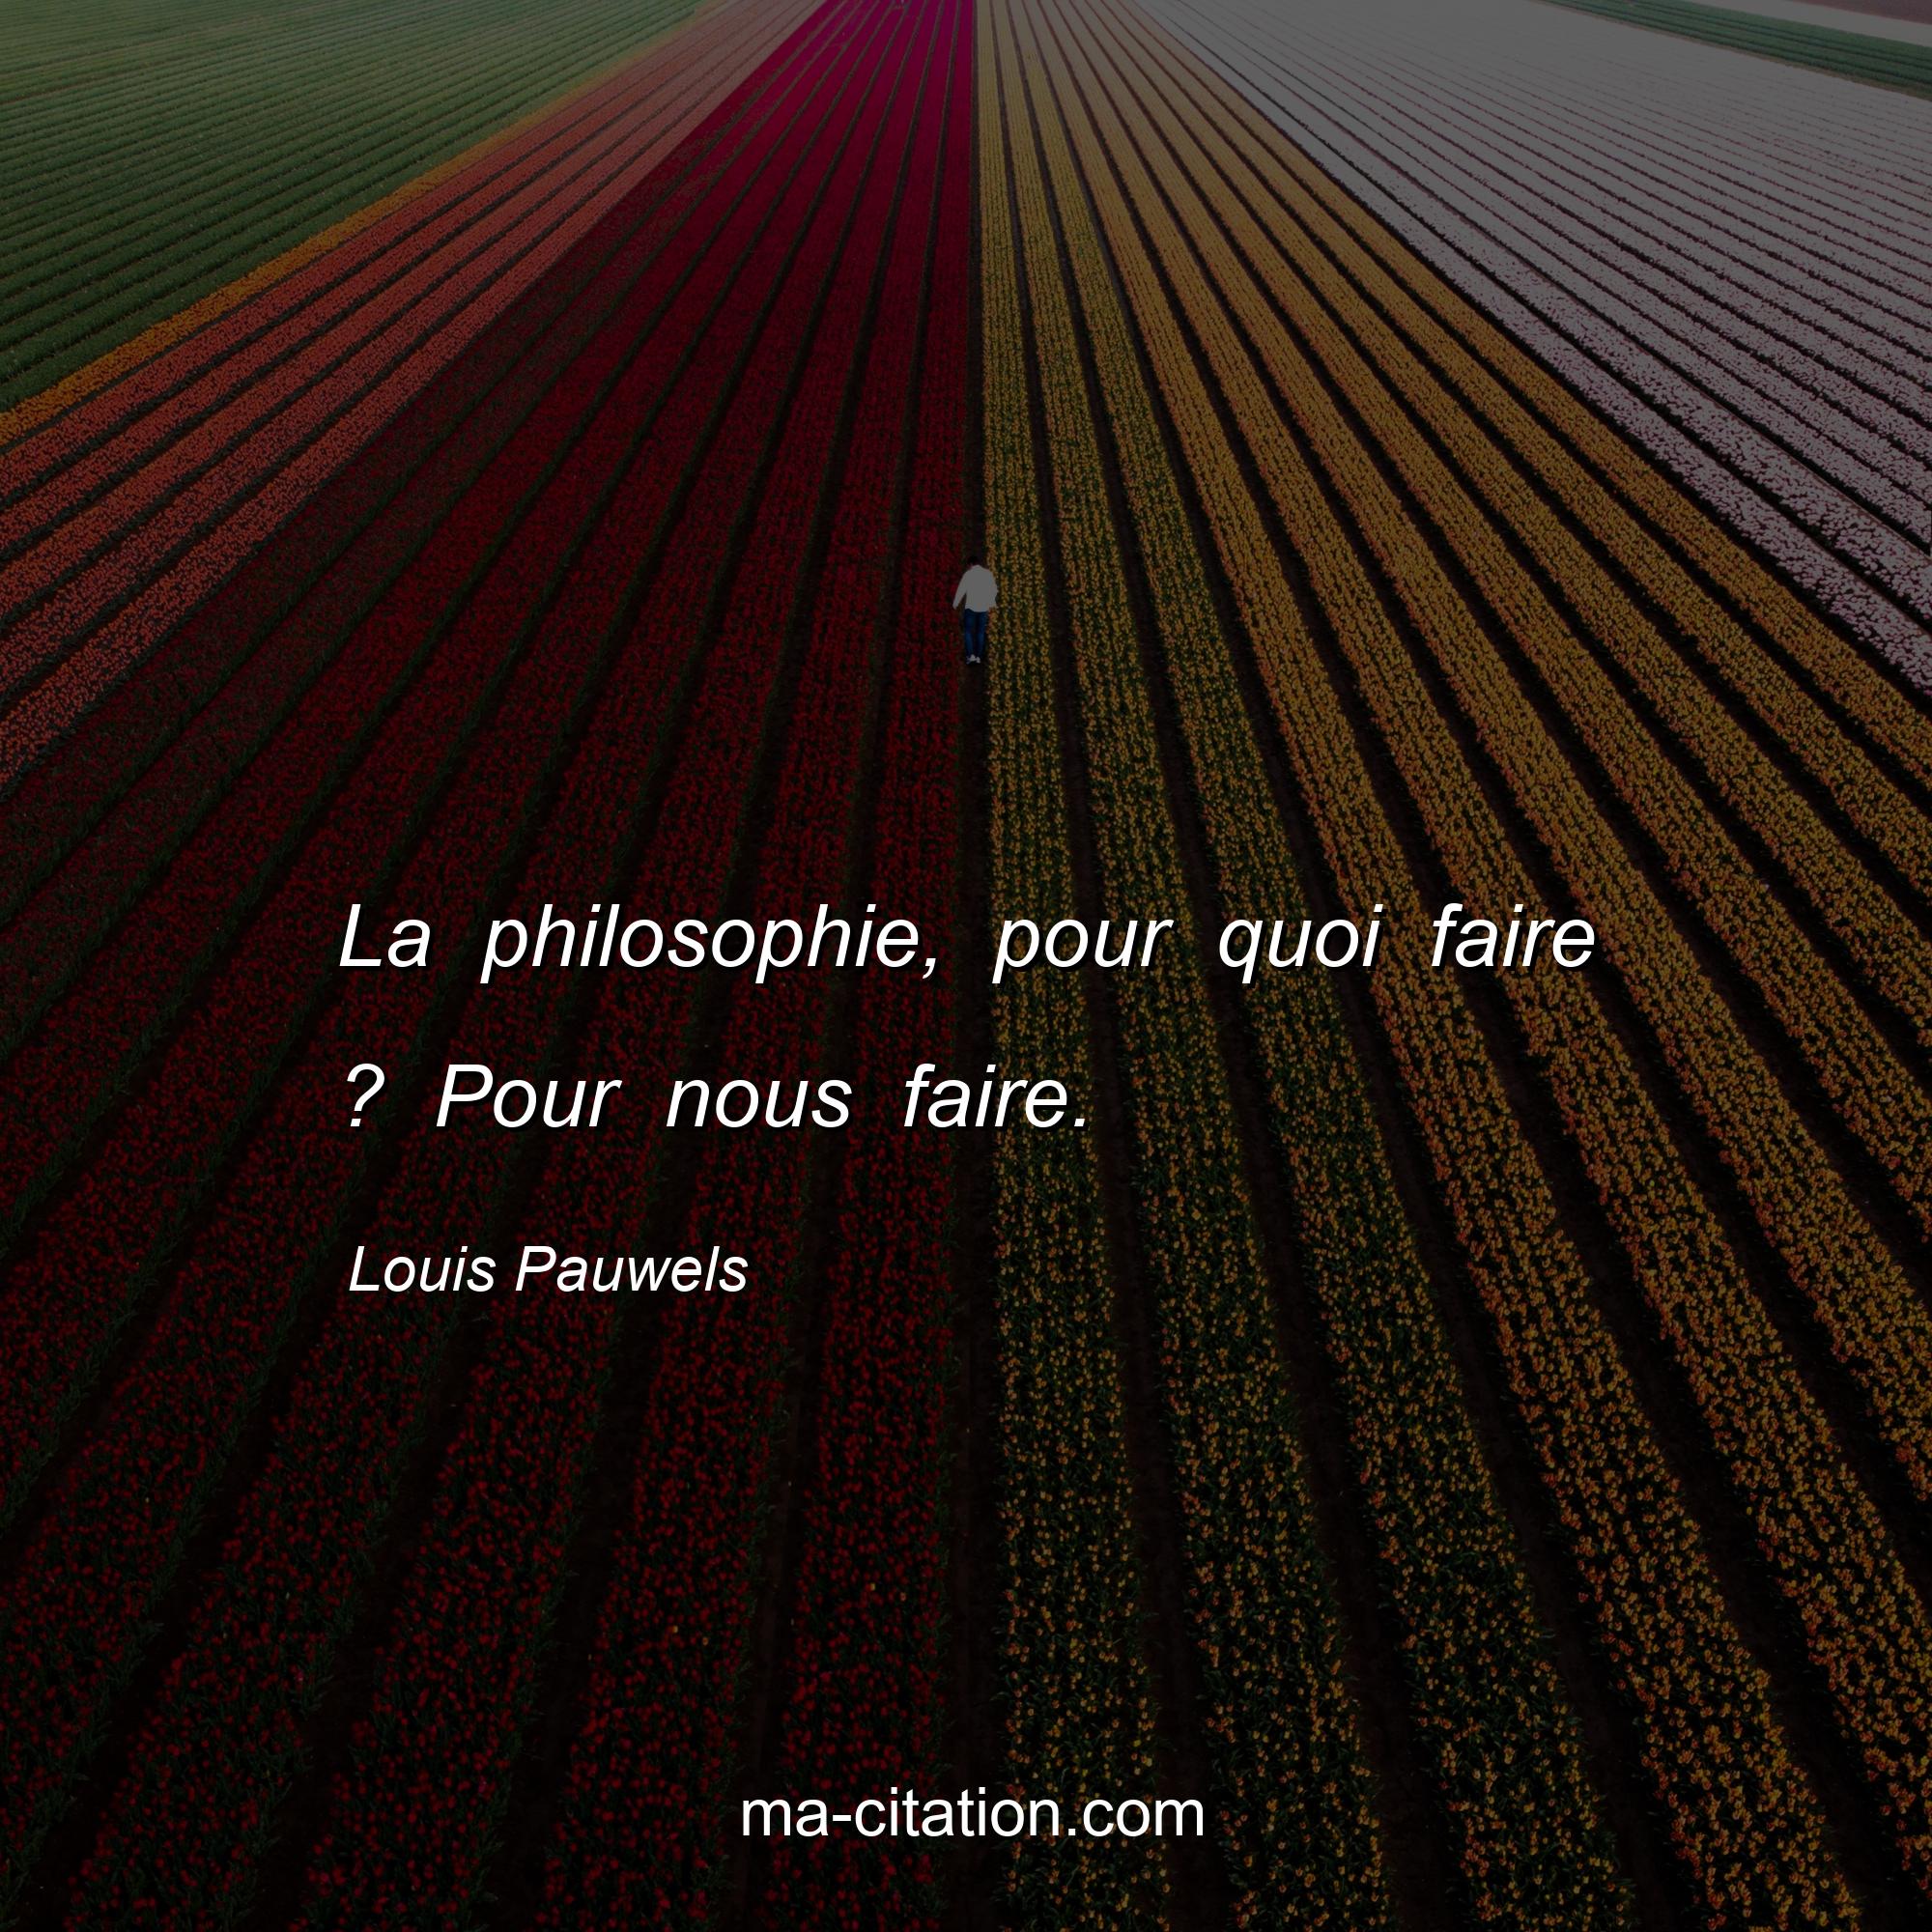 Louis Pauwels : La philosophie, pour quoi faire ? Pour nous faire.